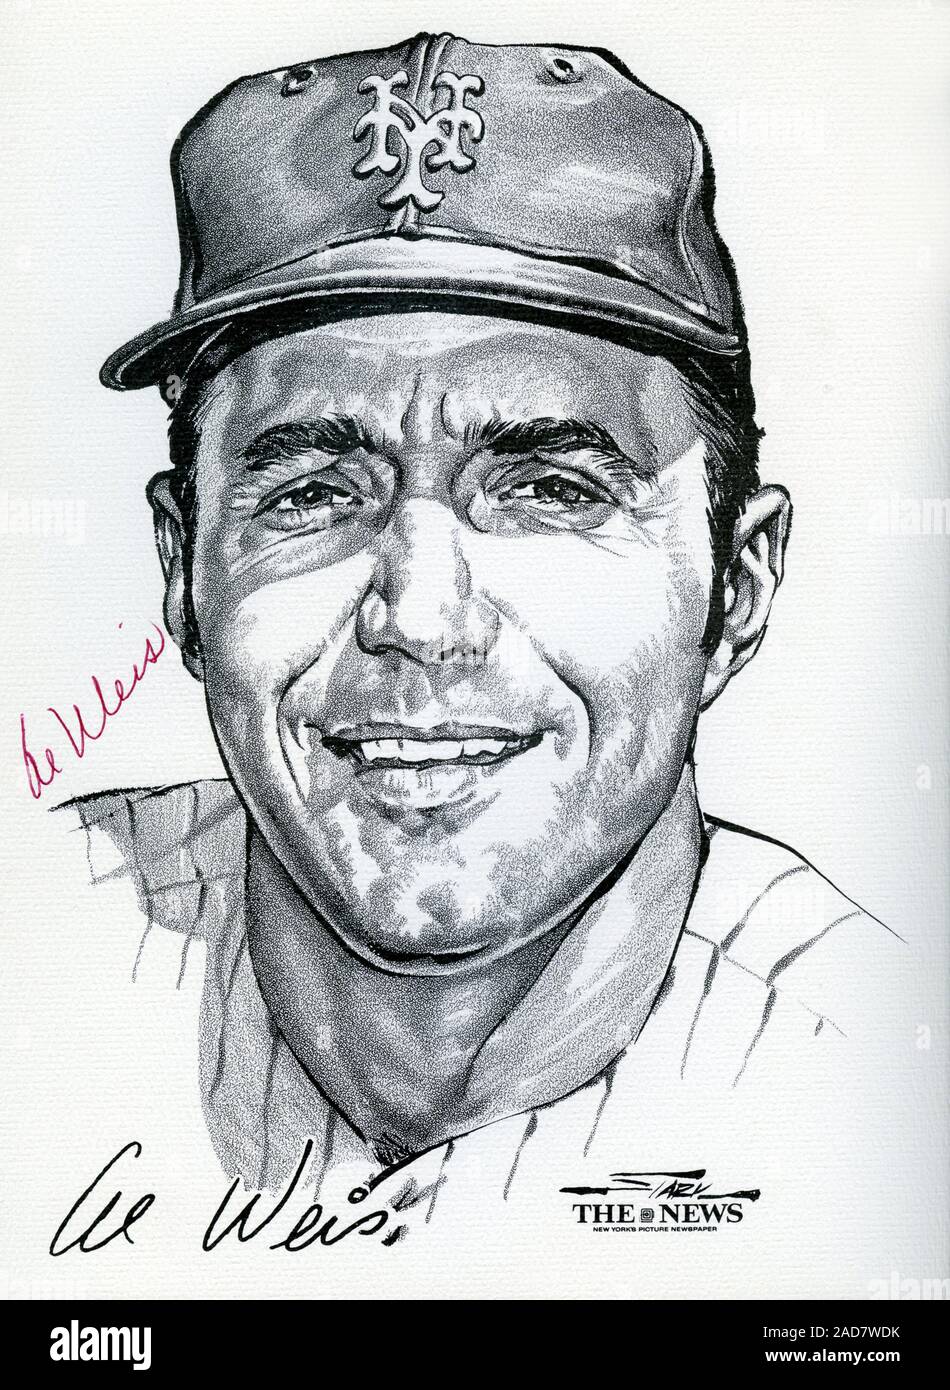 Portrait von New York Mets Spieler Al Weiss vom Wunder Team 1969 Mets, der World Series von Künstler Stark gewonnen und veröffentlicht als Souvenir Portfolio durch die Nachrichten von New York. Stockfoto